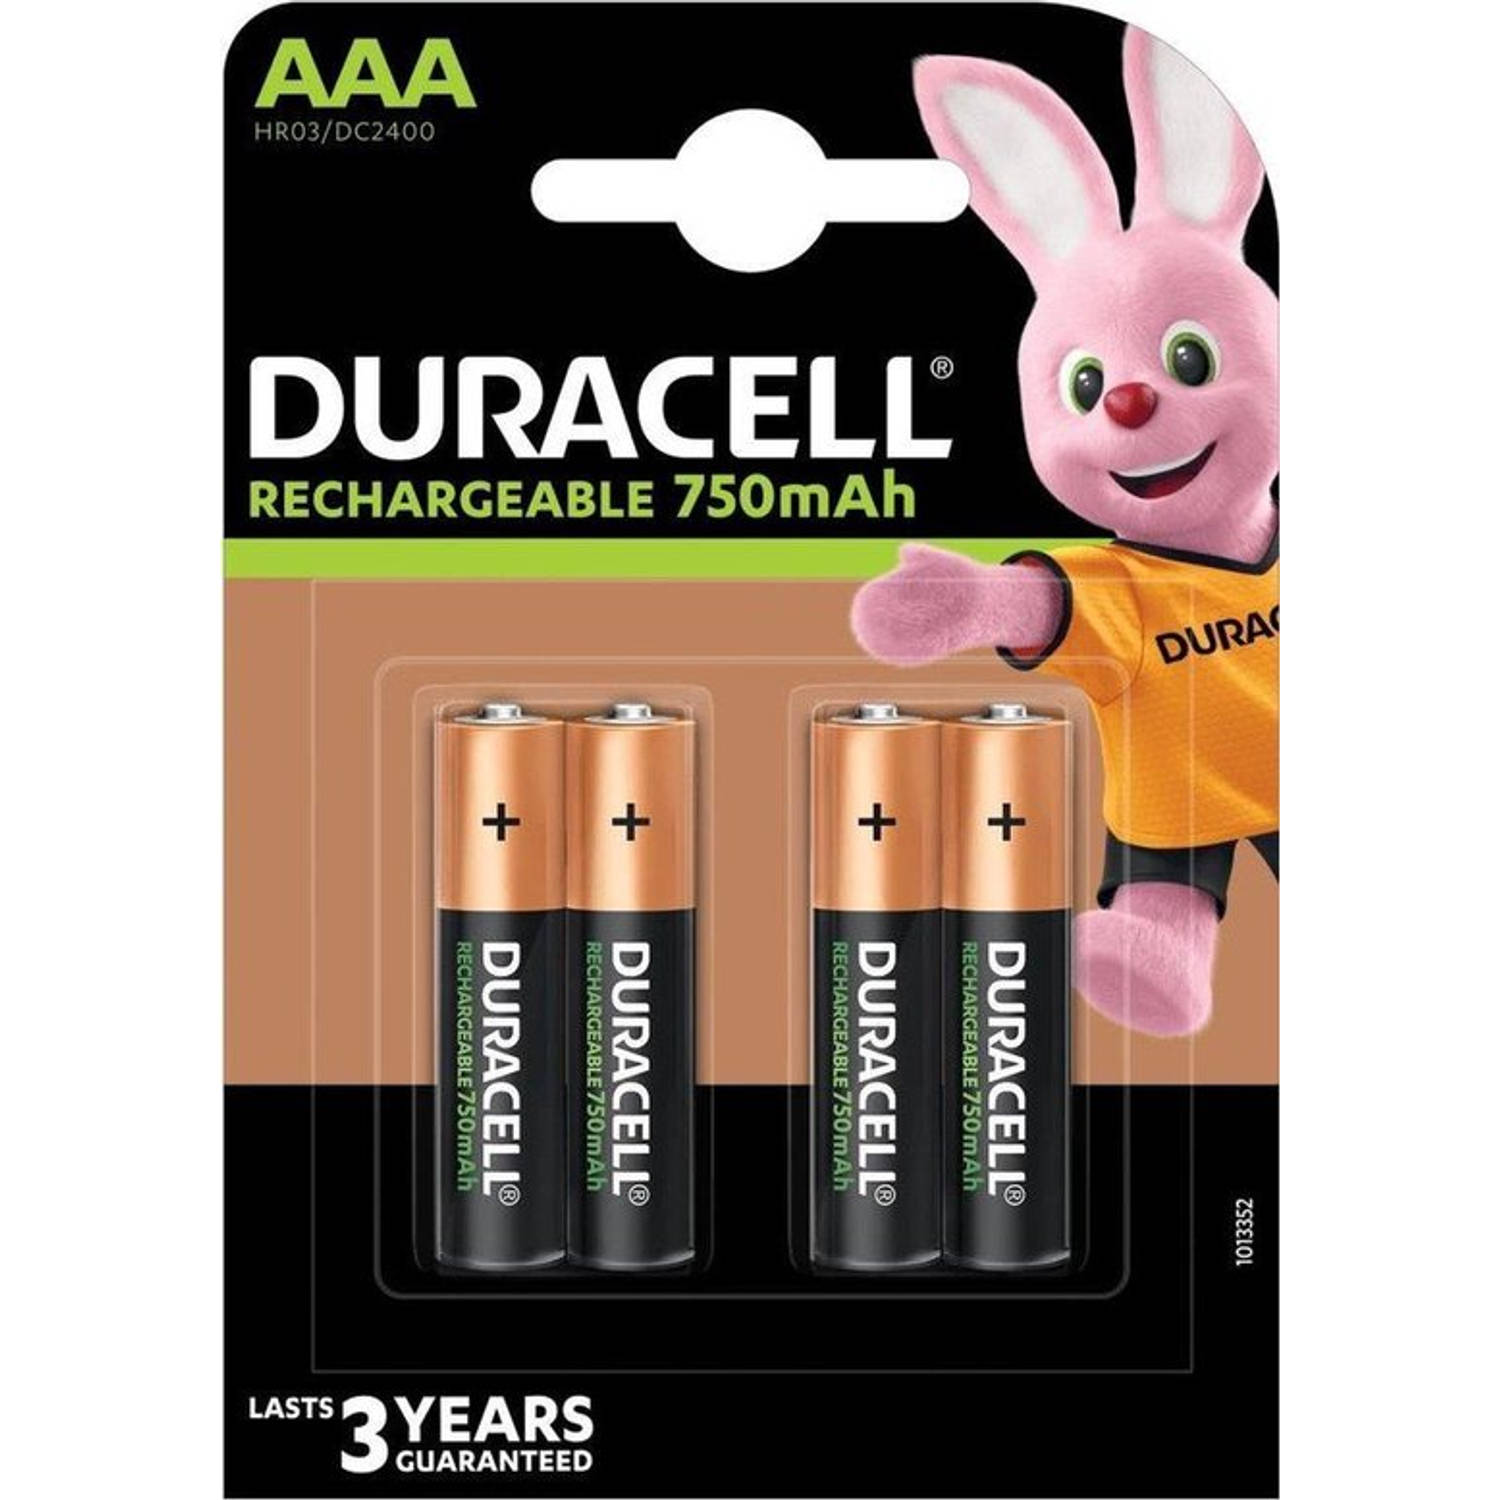 Duracell AAA Oplaadbare Batterijen - 750 mAh - 8 stuks